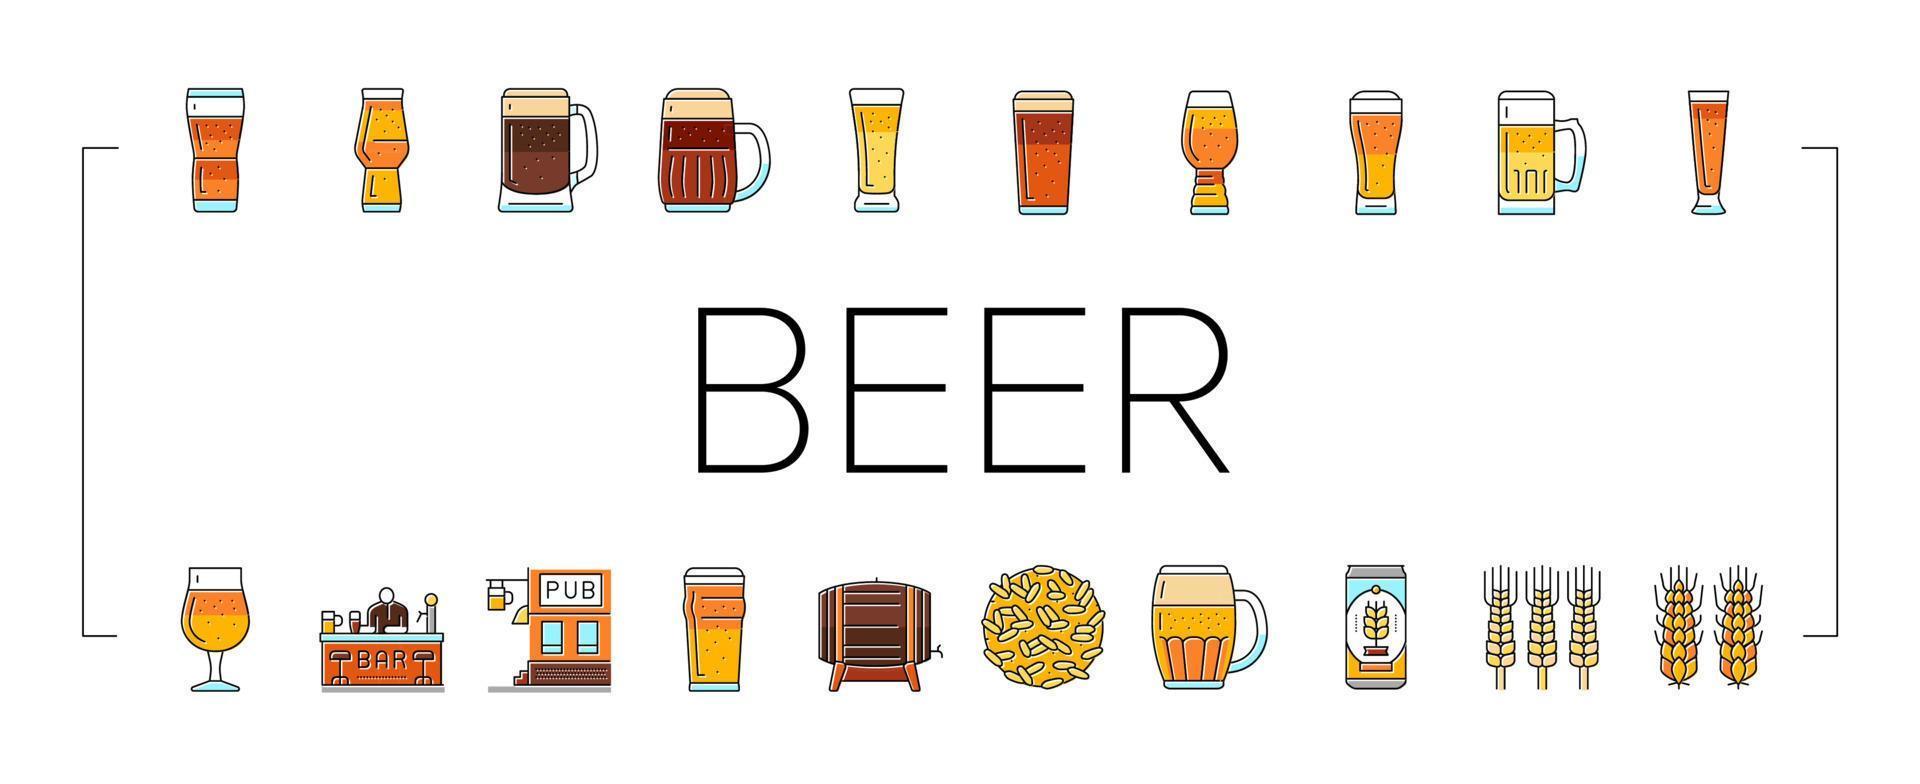 vaso cerveza jarra pinta bar beber iconos establecer vector